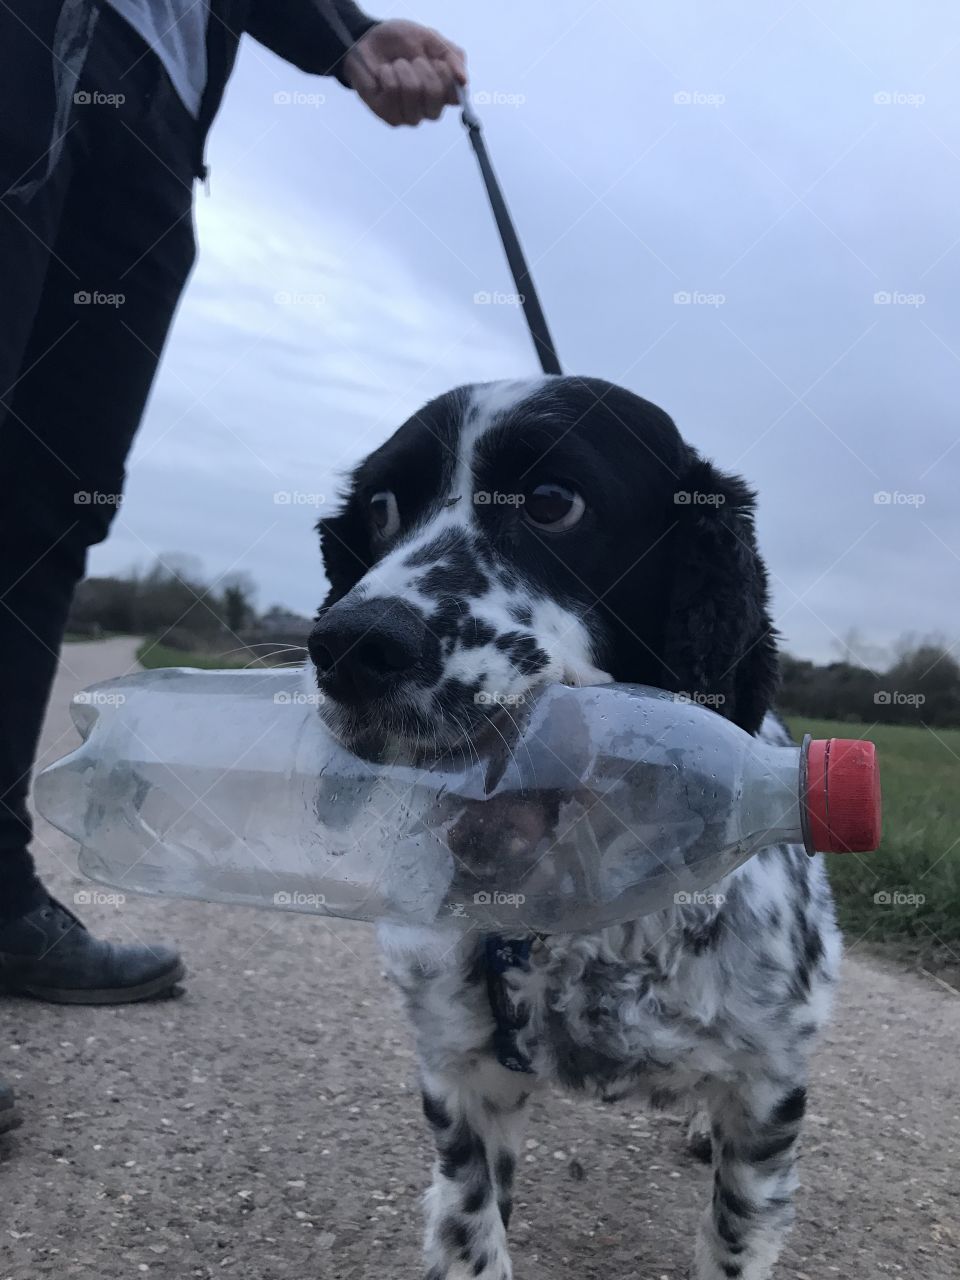 Water Bottle Dog - Jasper always finds a water bottle to carry when having a walk! 